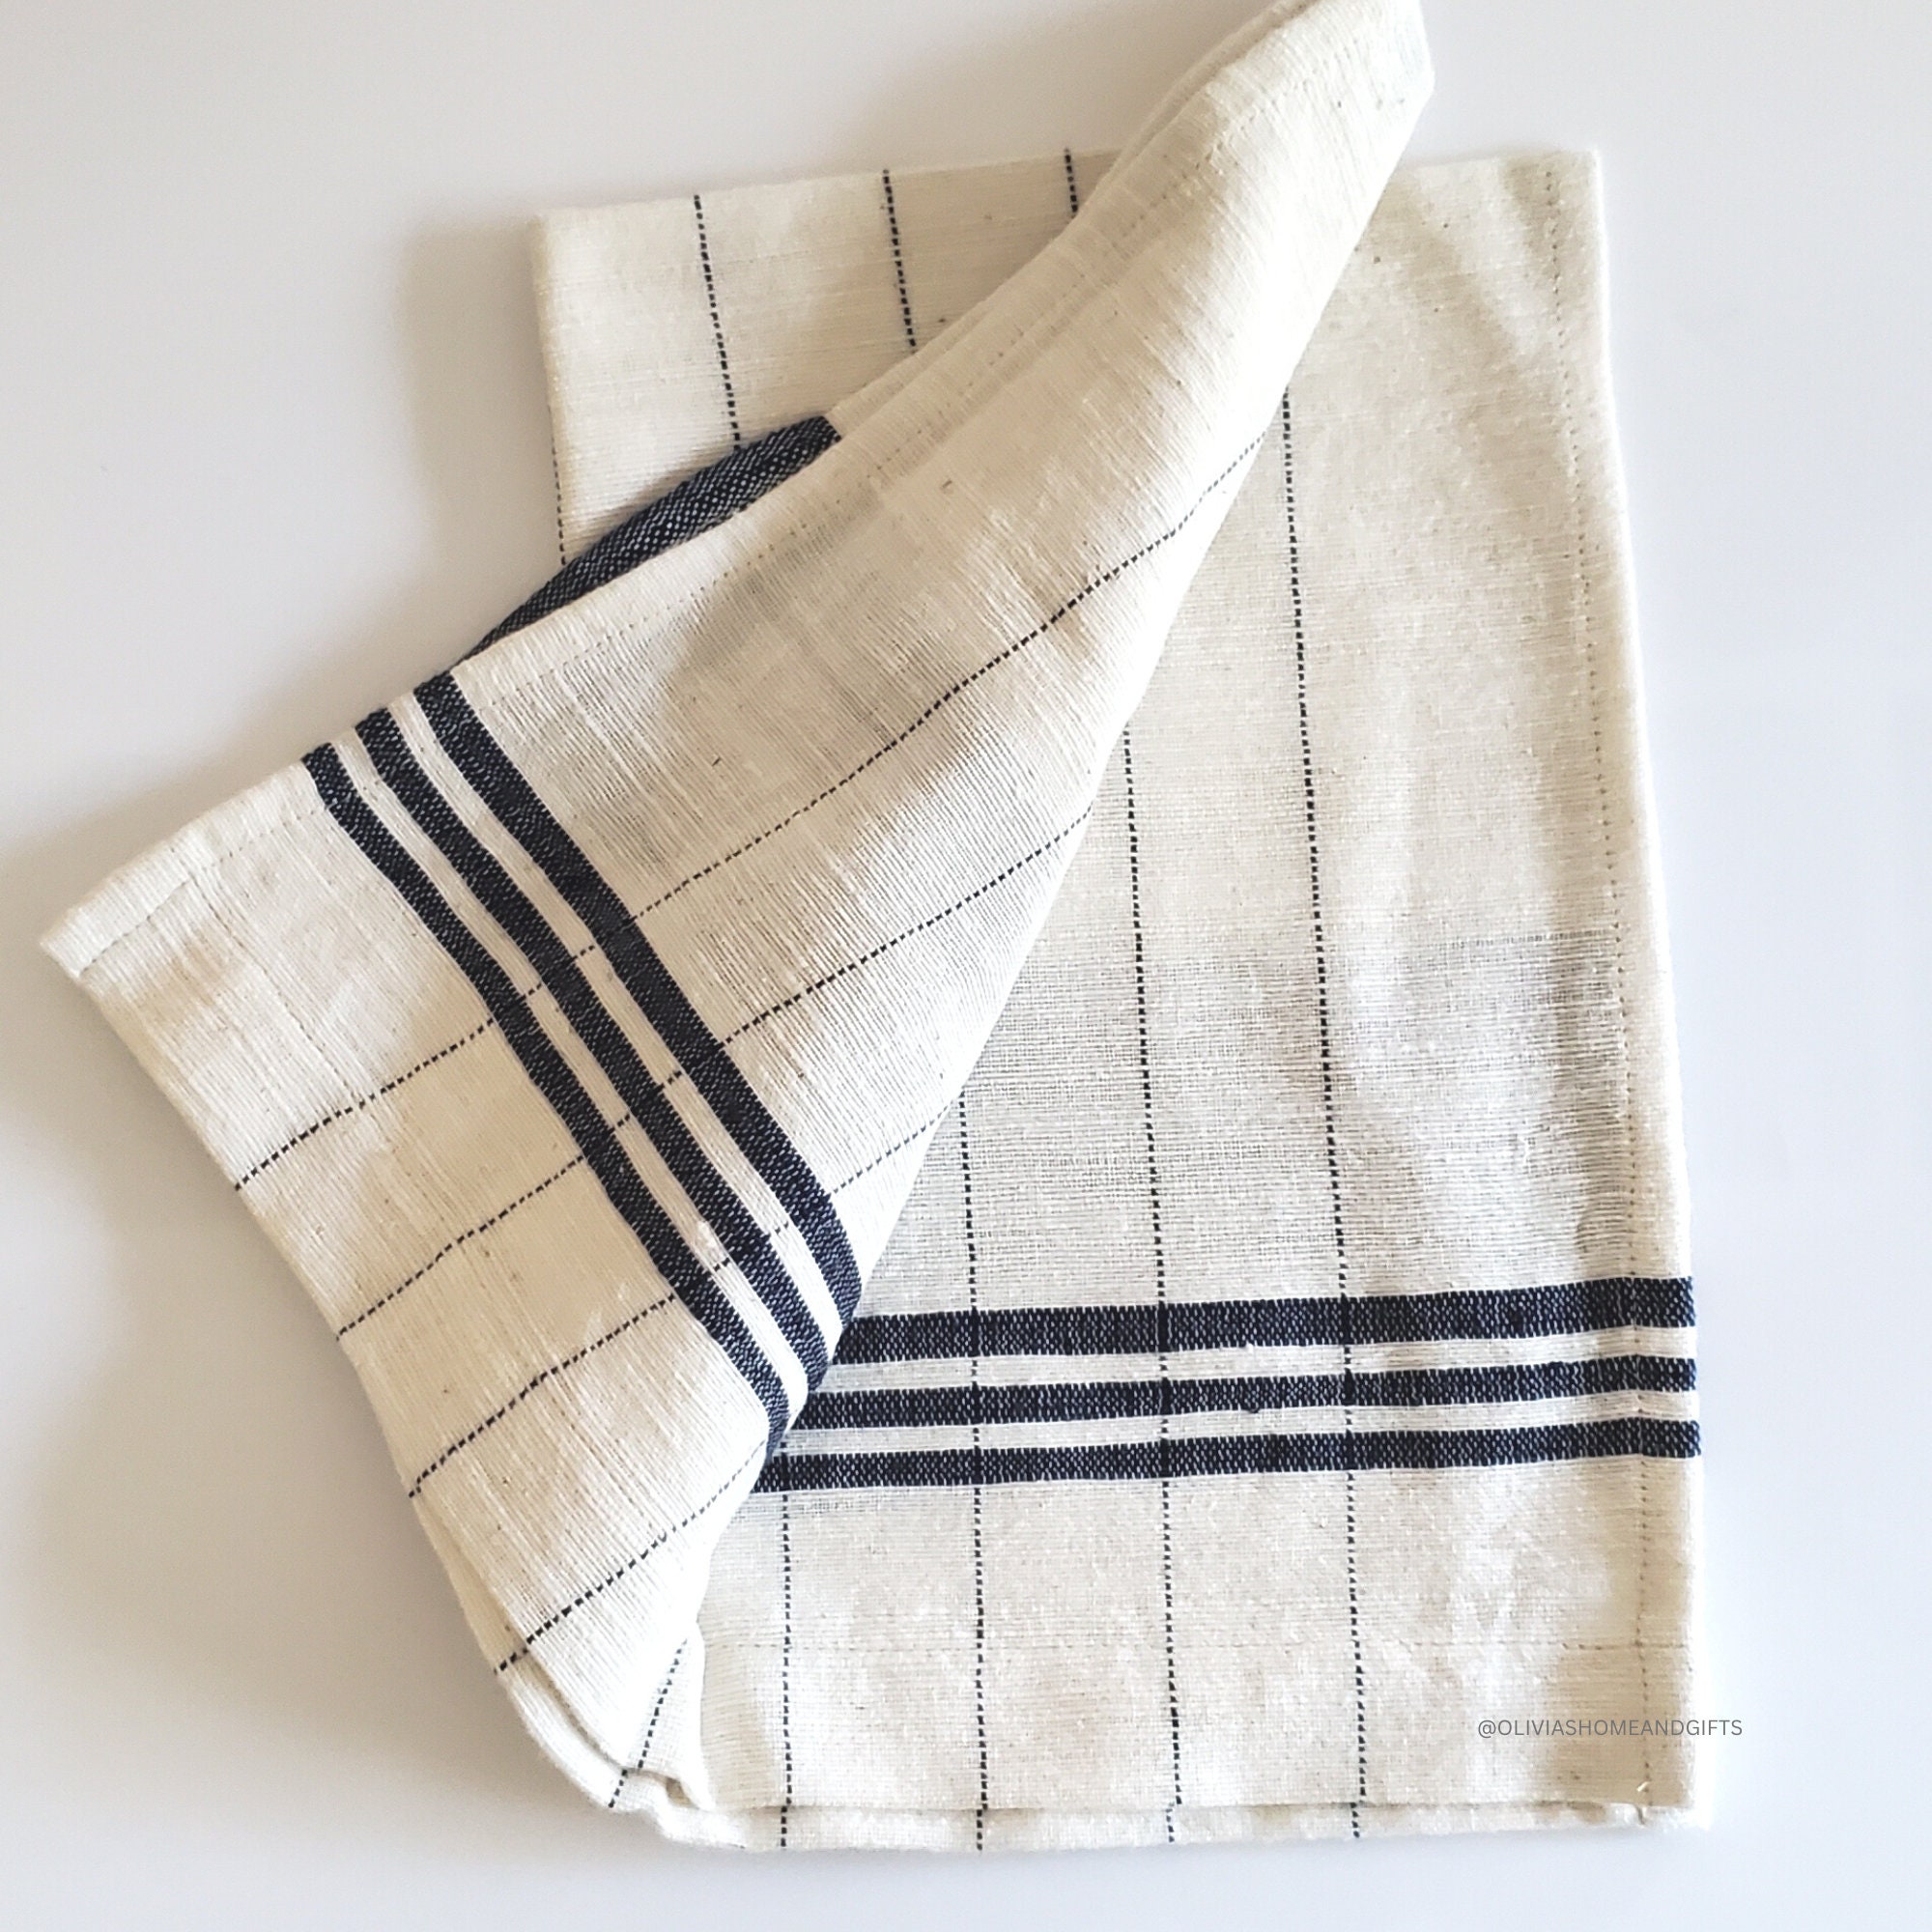 Tea Towel Set, Hand-Spun Cotton